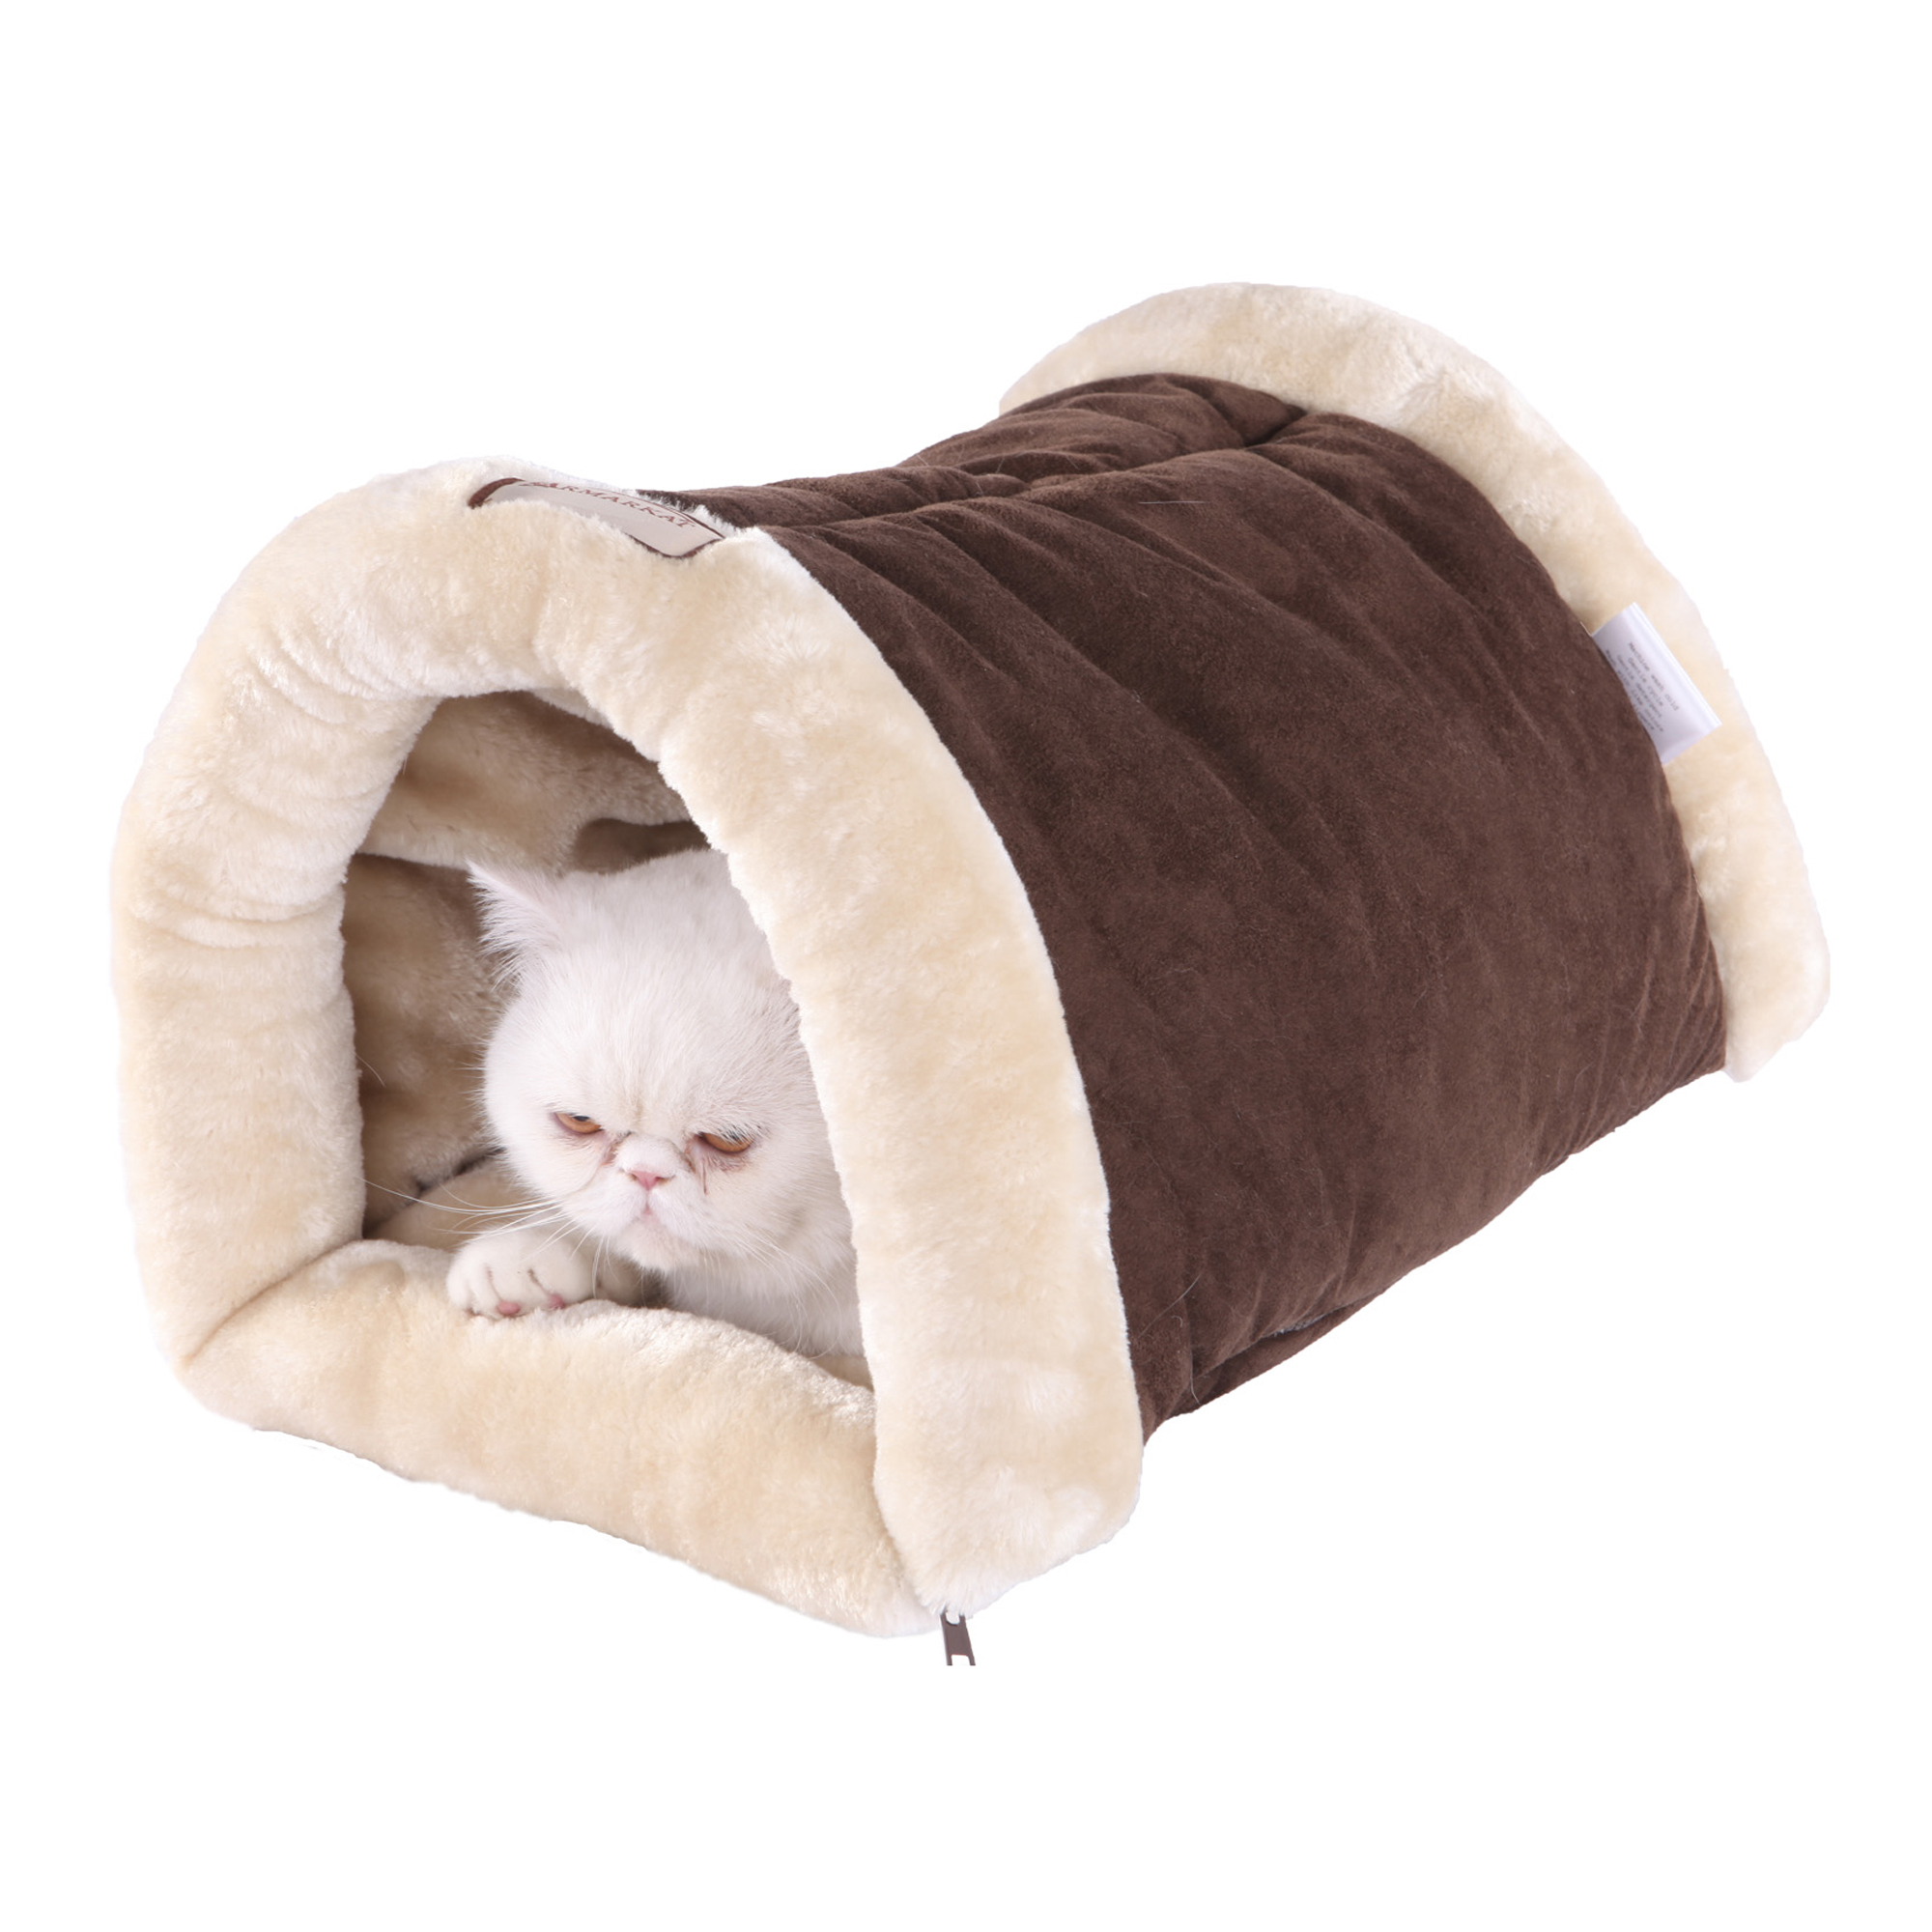 C16hkf-mh Armarkat Pet Bed Cat Bed 22 X 10 X 14 - Mocha & Beige